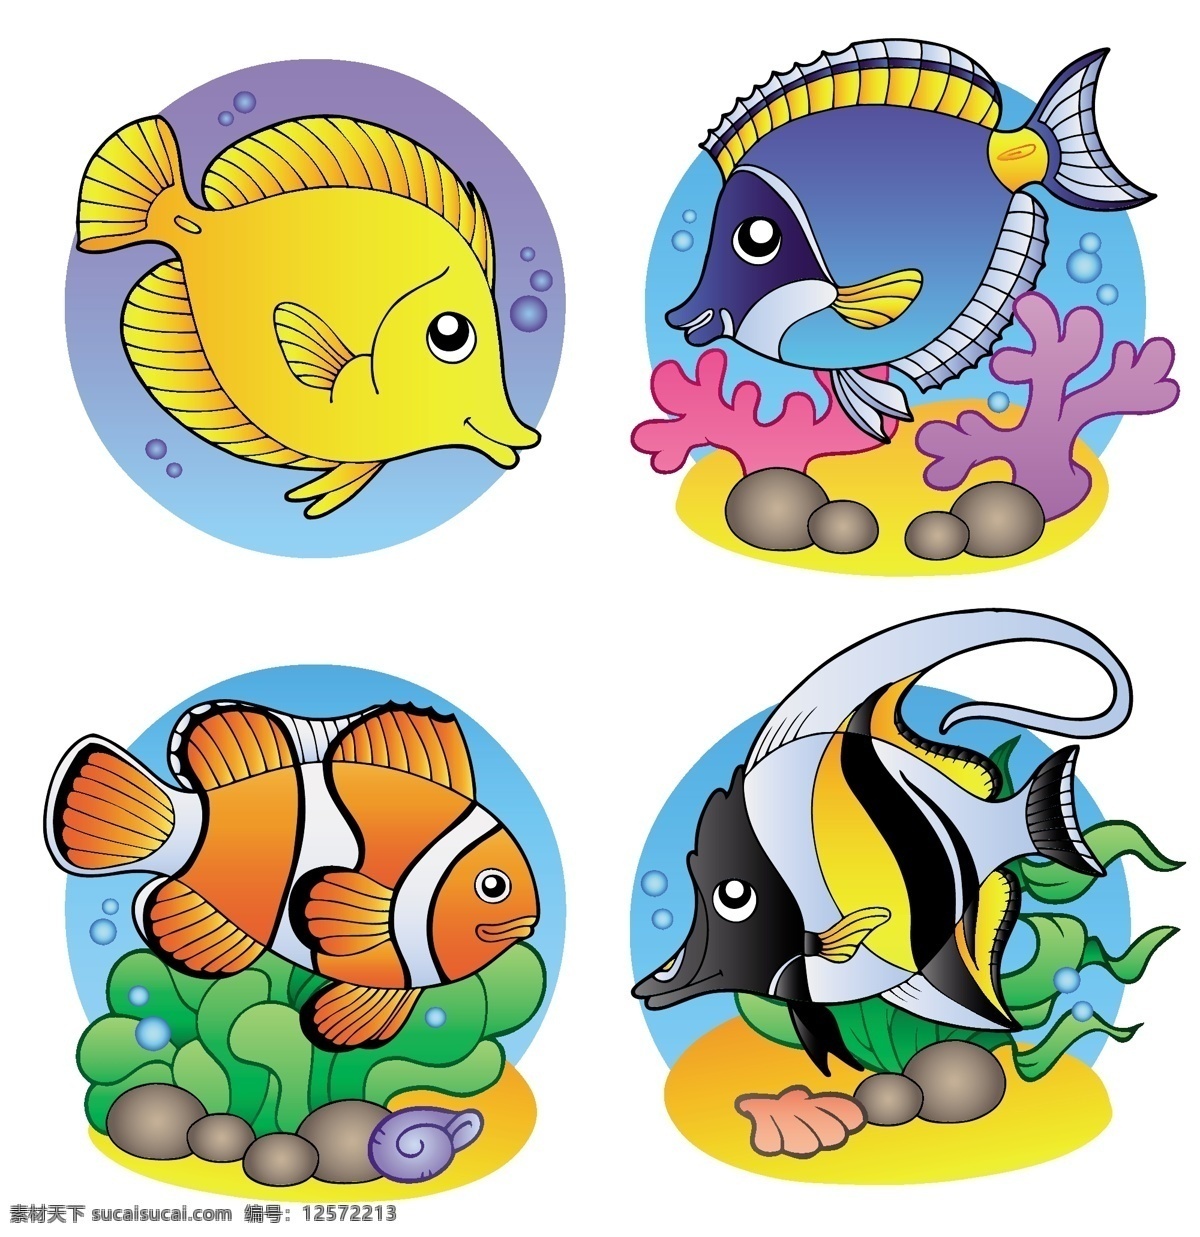 海洋 鱼类 海底景观 海草 珊瑚 动漫动画 风景漫画